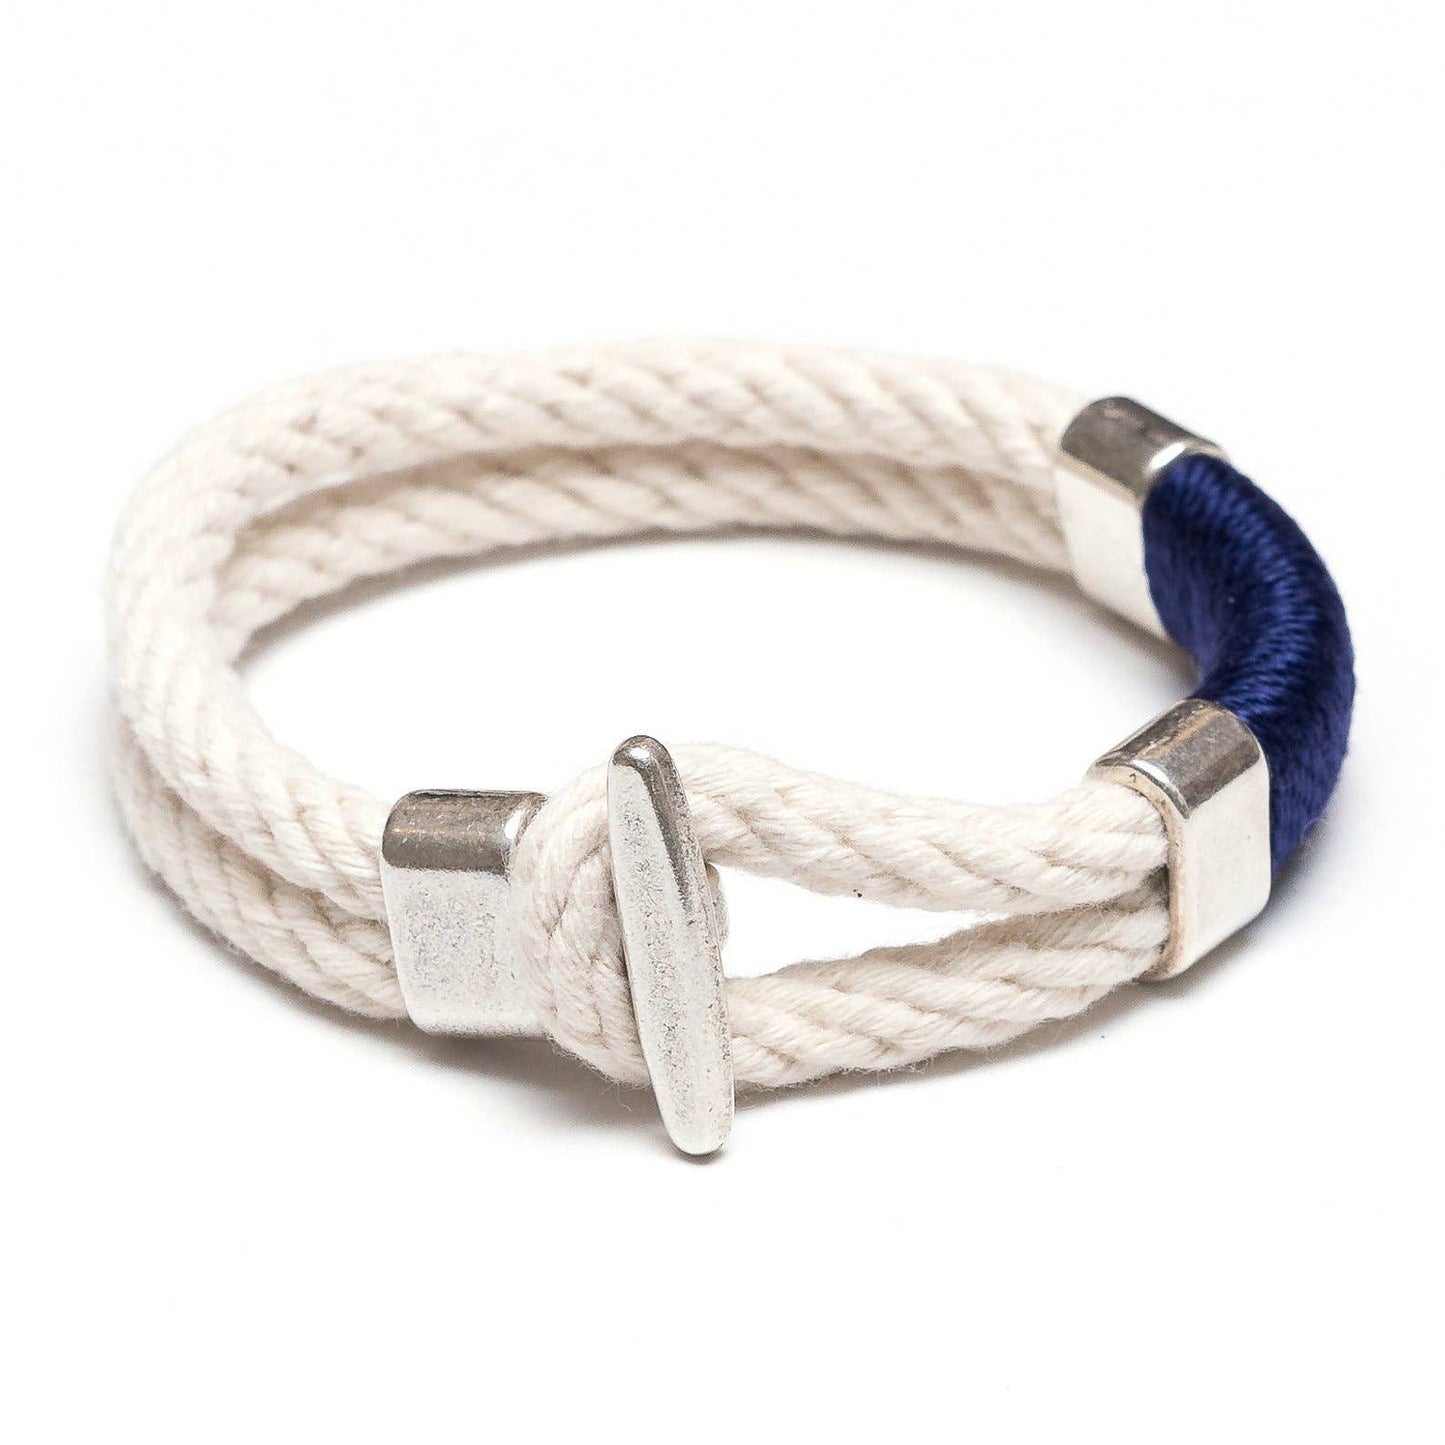 Cambridge Bracelet - Ivory/Navy/Silver